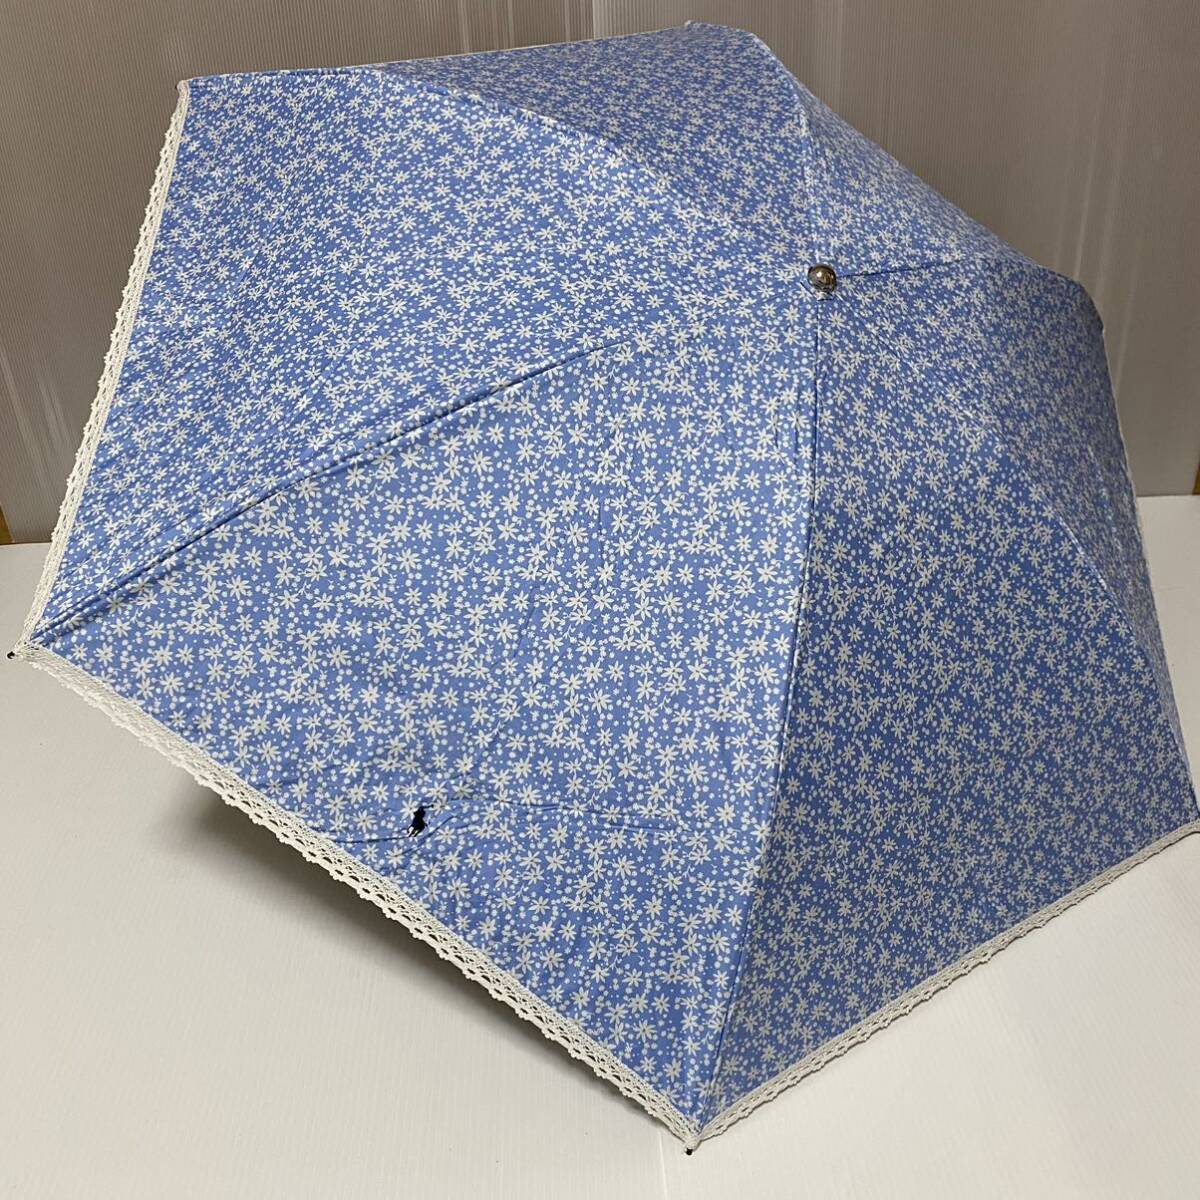 う240334 POLO RALPH LAUREN ポロ ラルフローレン 折りたたみ傘 晴雨兼用 雨傘 日傘の画像1